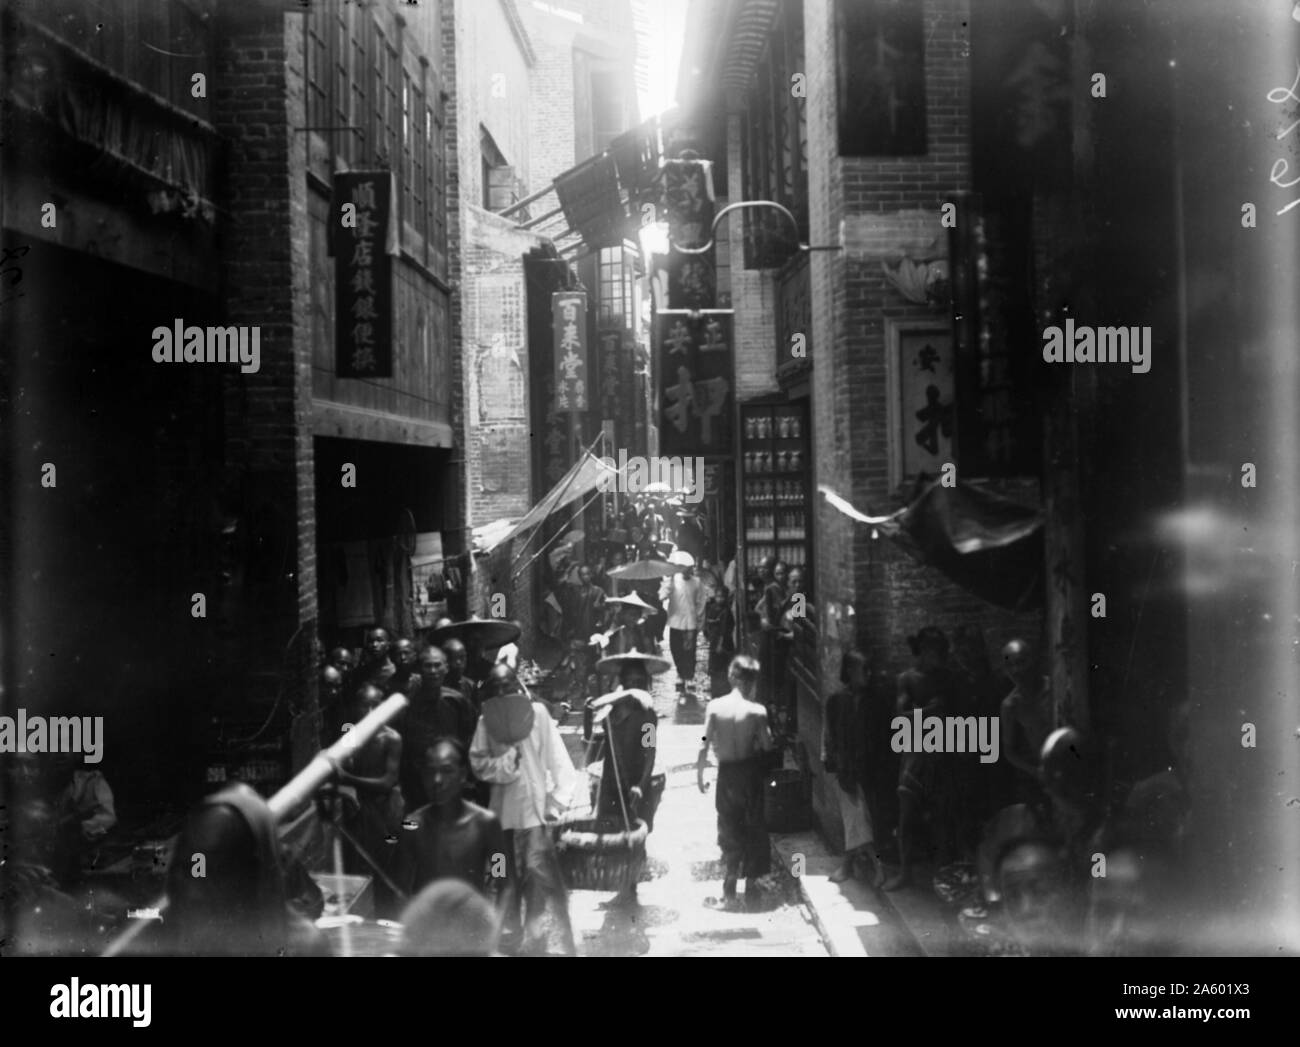 Fotografia della linguetta di Guangzhou Lang Street da William Henry Jackson (1843-1942) un pittore americano, guerra civile veterano, indagine geologica fotografo e un esploratore famoso per le sue immagini del West americano. Datata del XIX secolo Foto Stock